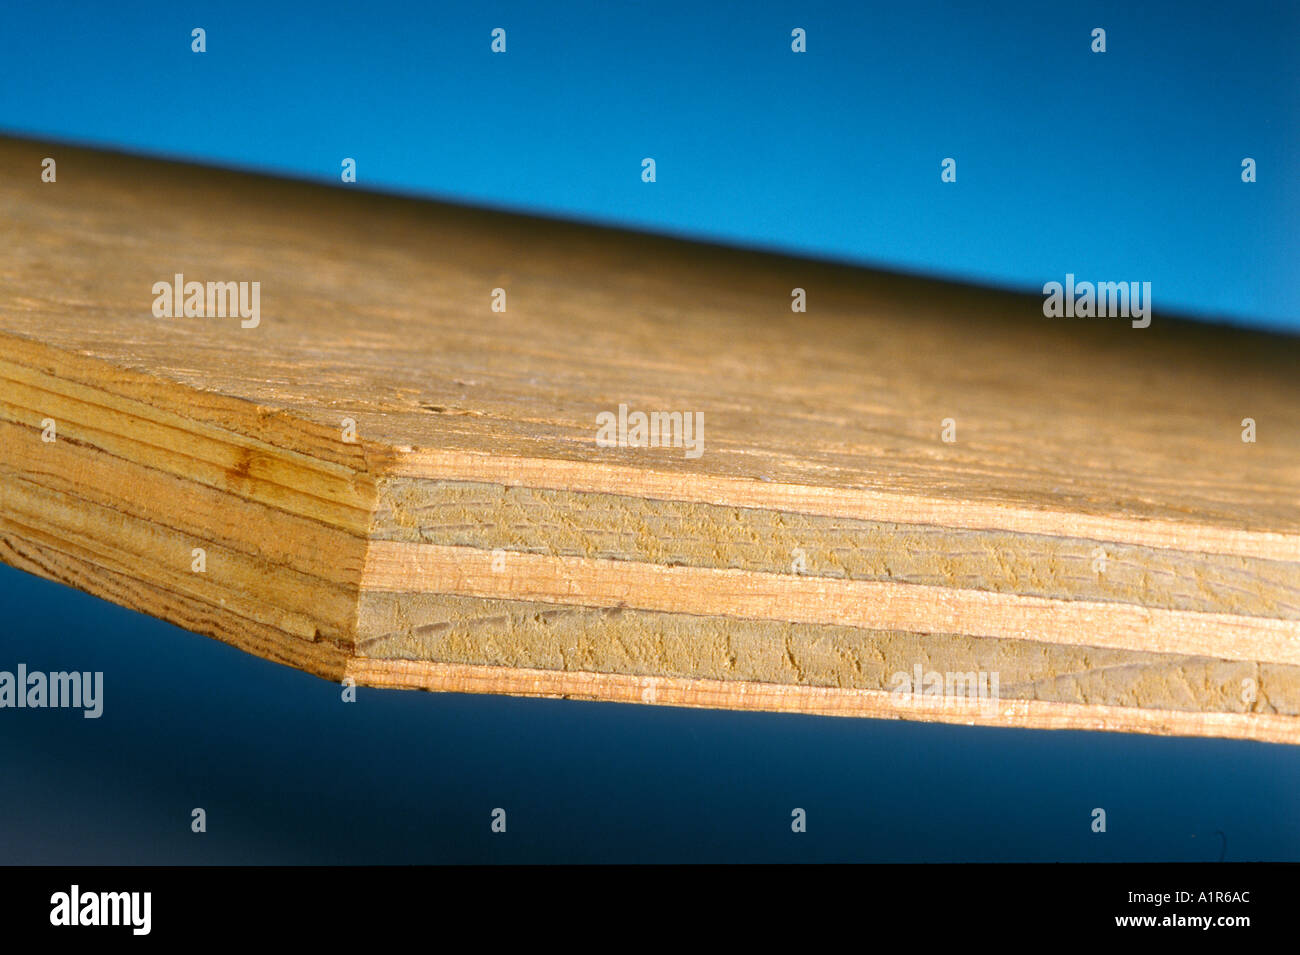 Laminated Wood 3 4 inch Plywood Stock Photo